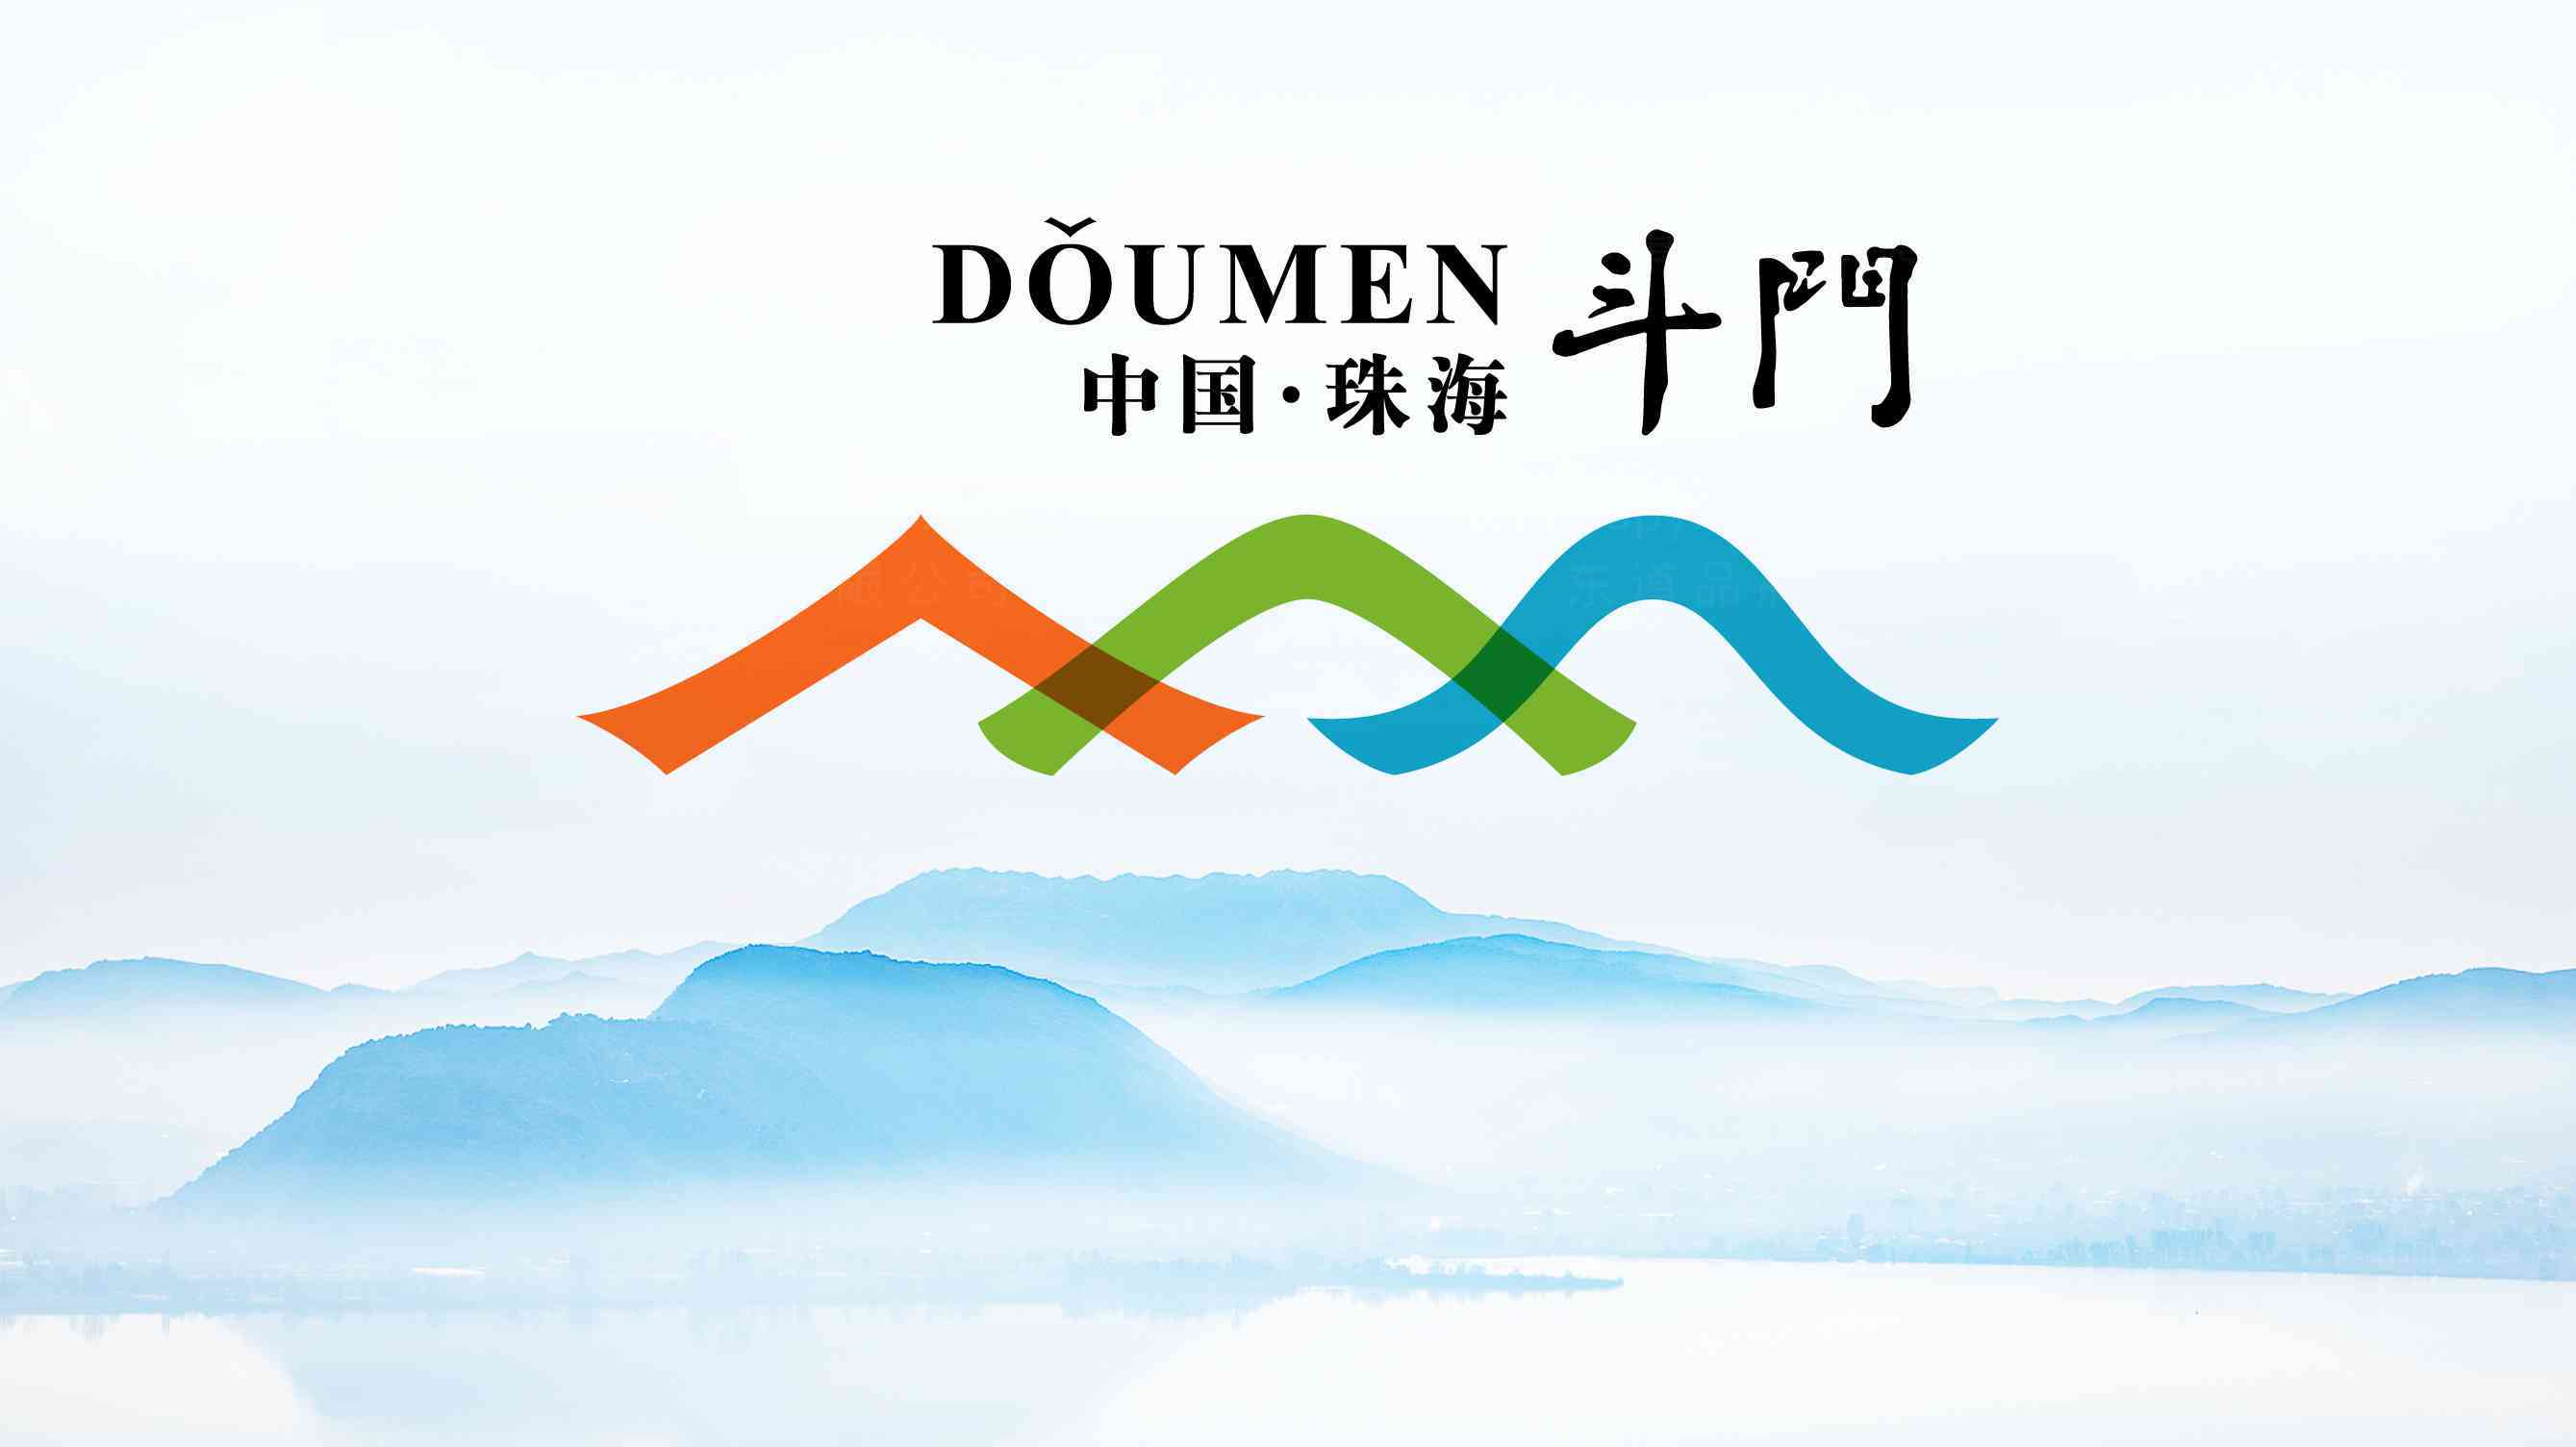 斗门旅游局logo设计图片素材